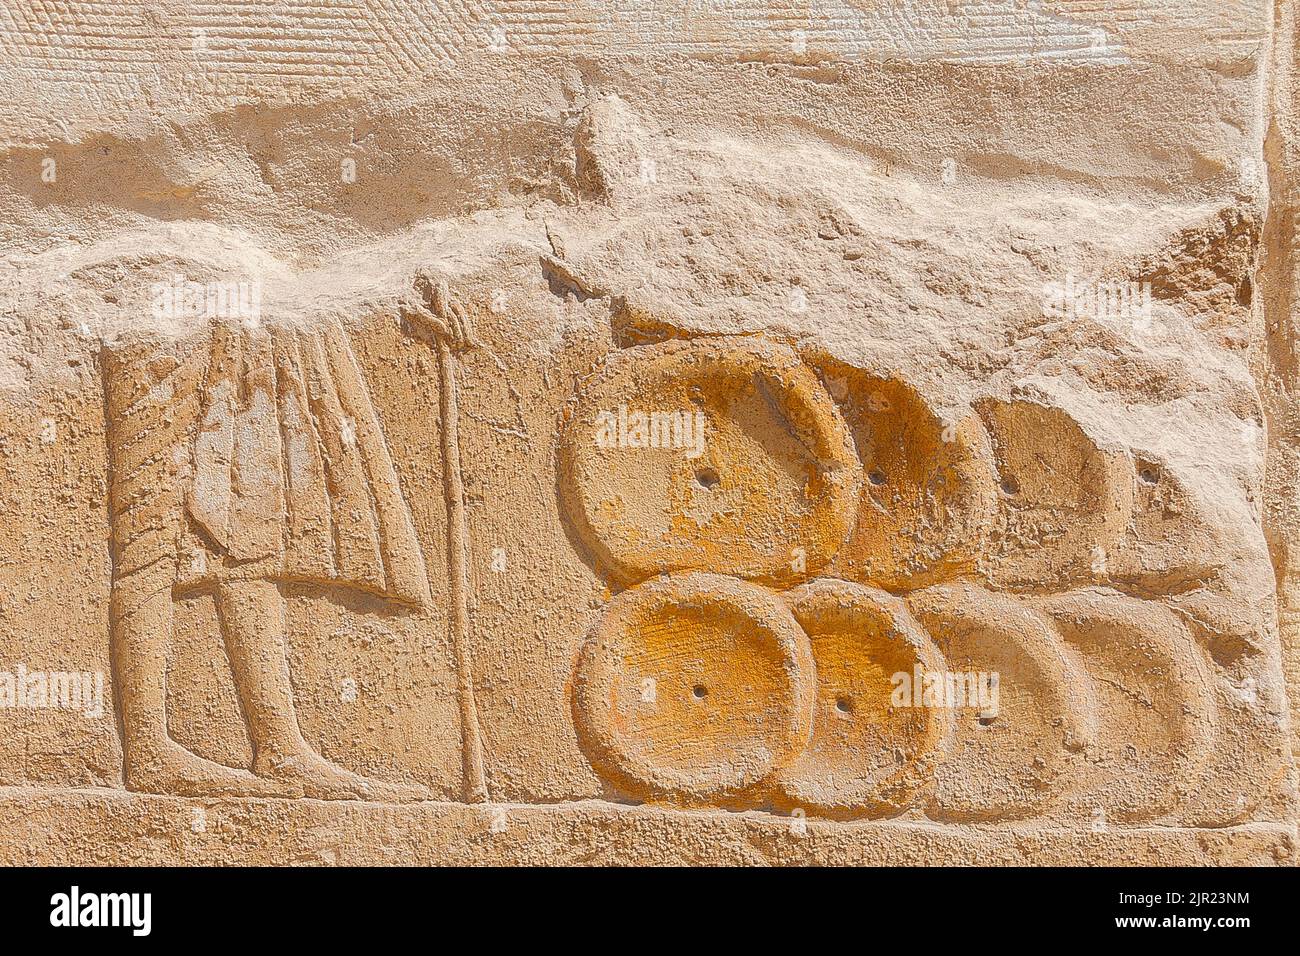 Ägypten, Saqqara, New Kingdom Grab von Horemheb, Nordwand des zweiten Gerichts: Mann vor großen gelben Broten. Stockfoto